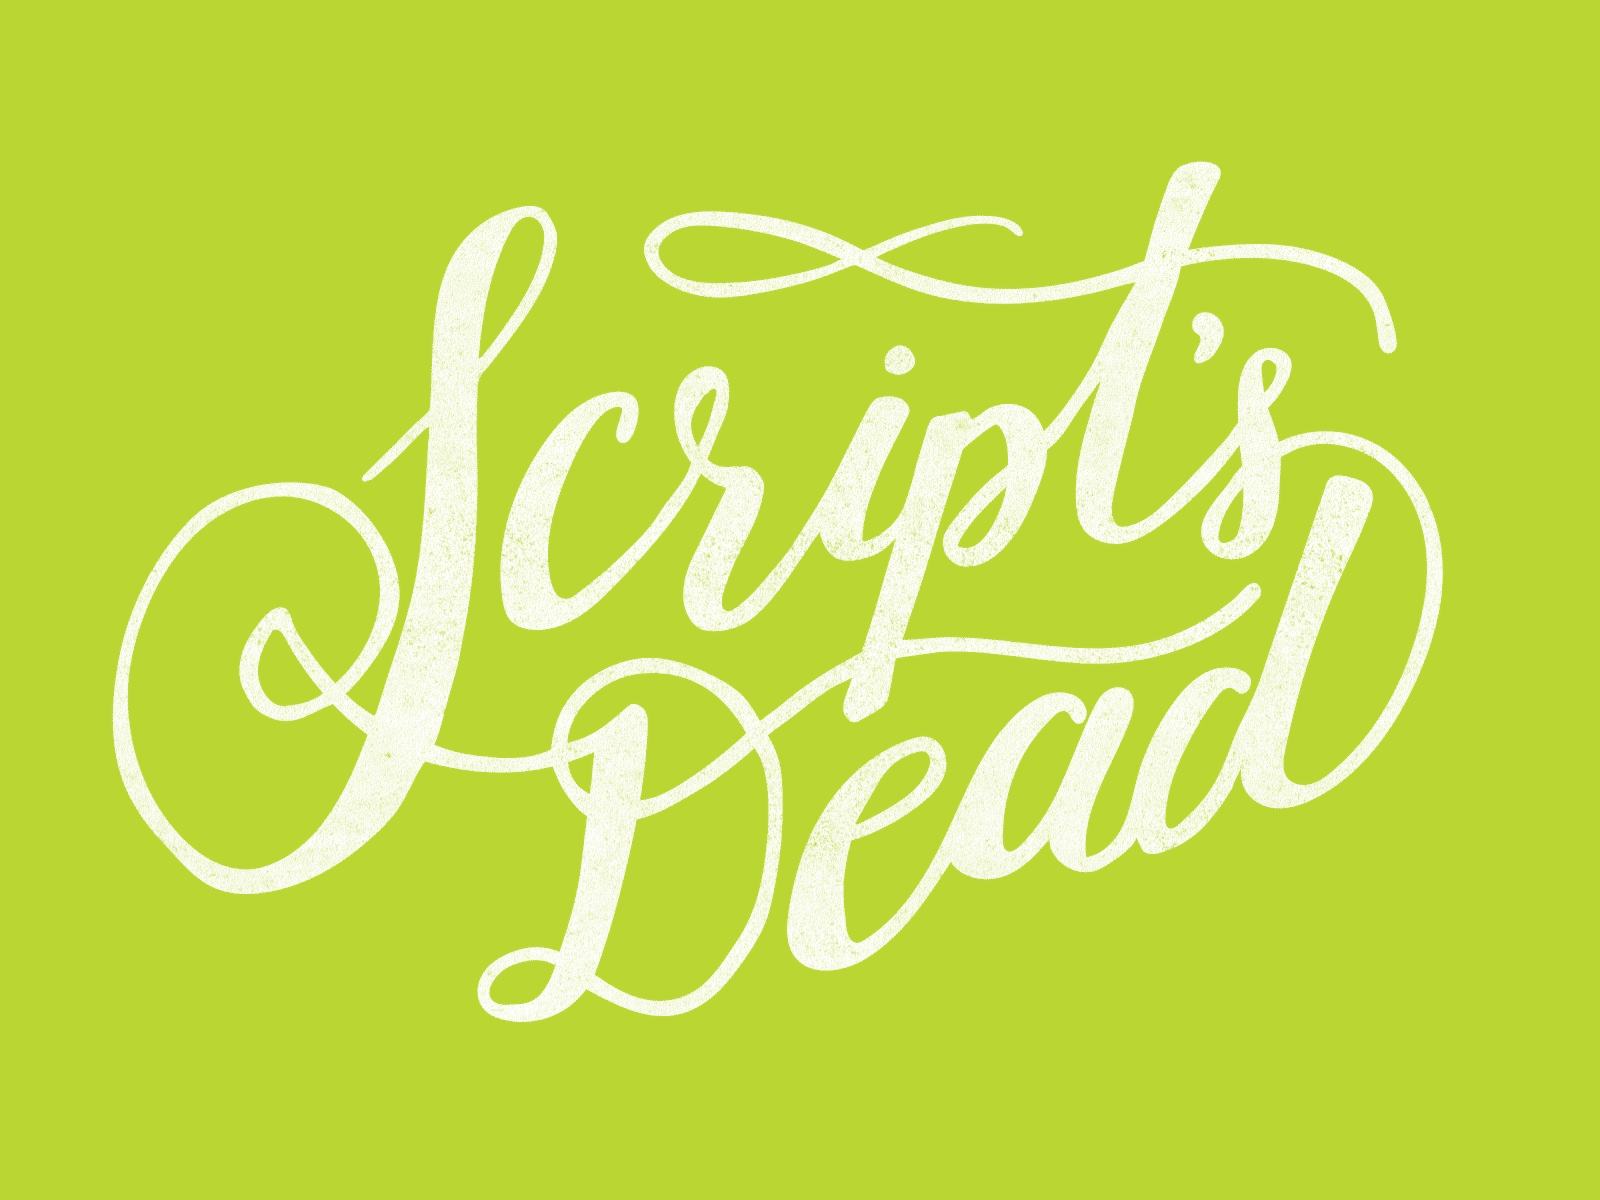 Script's Dead